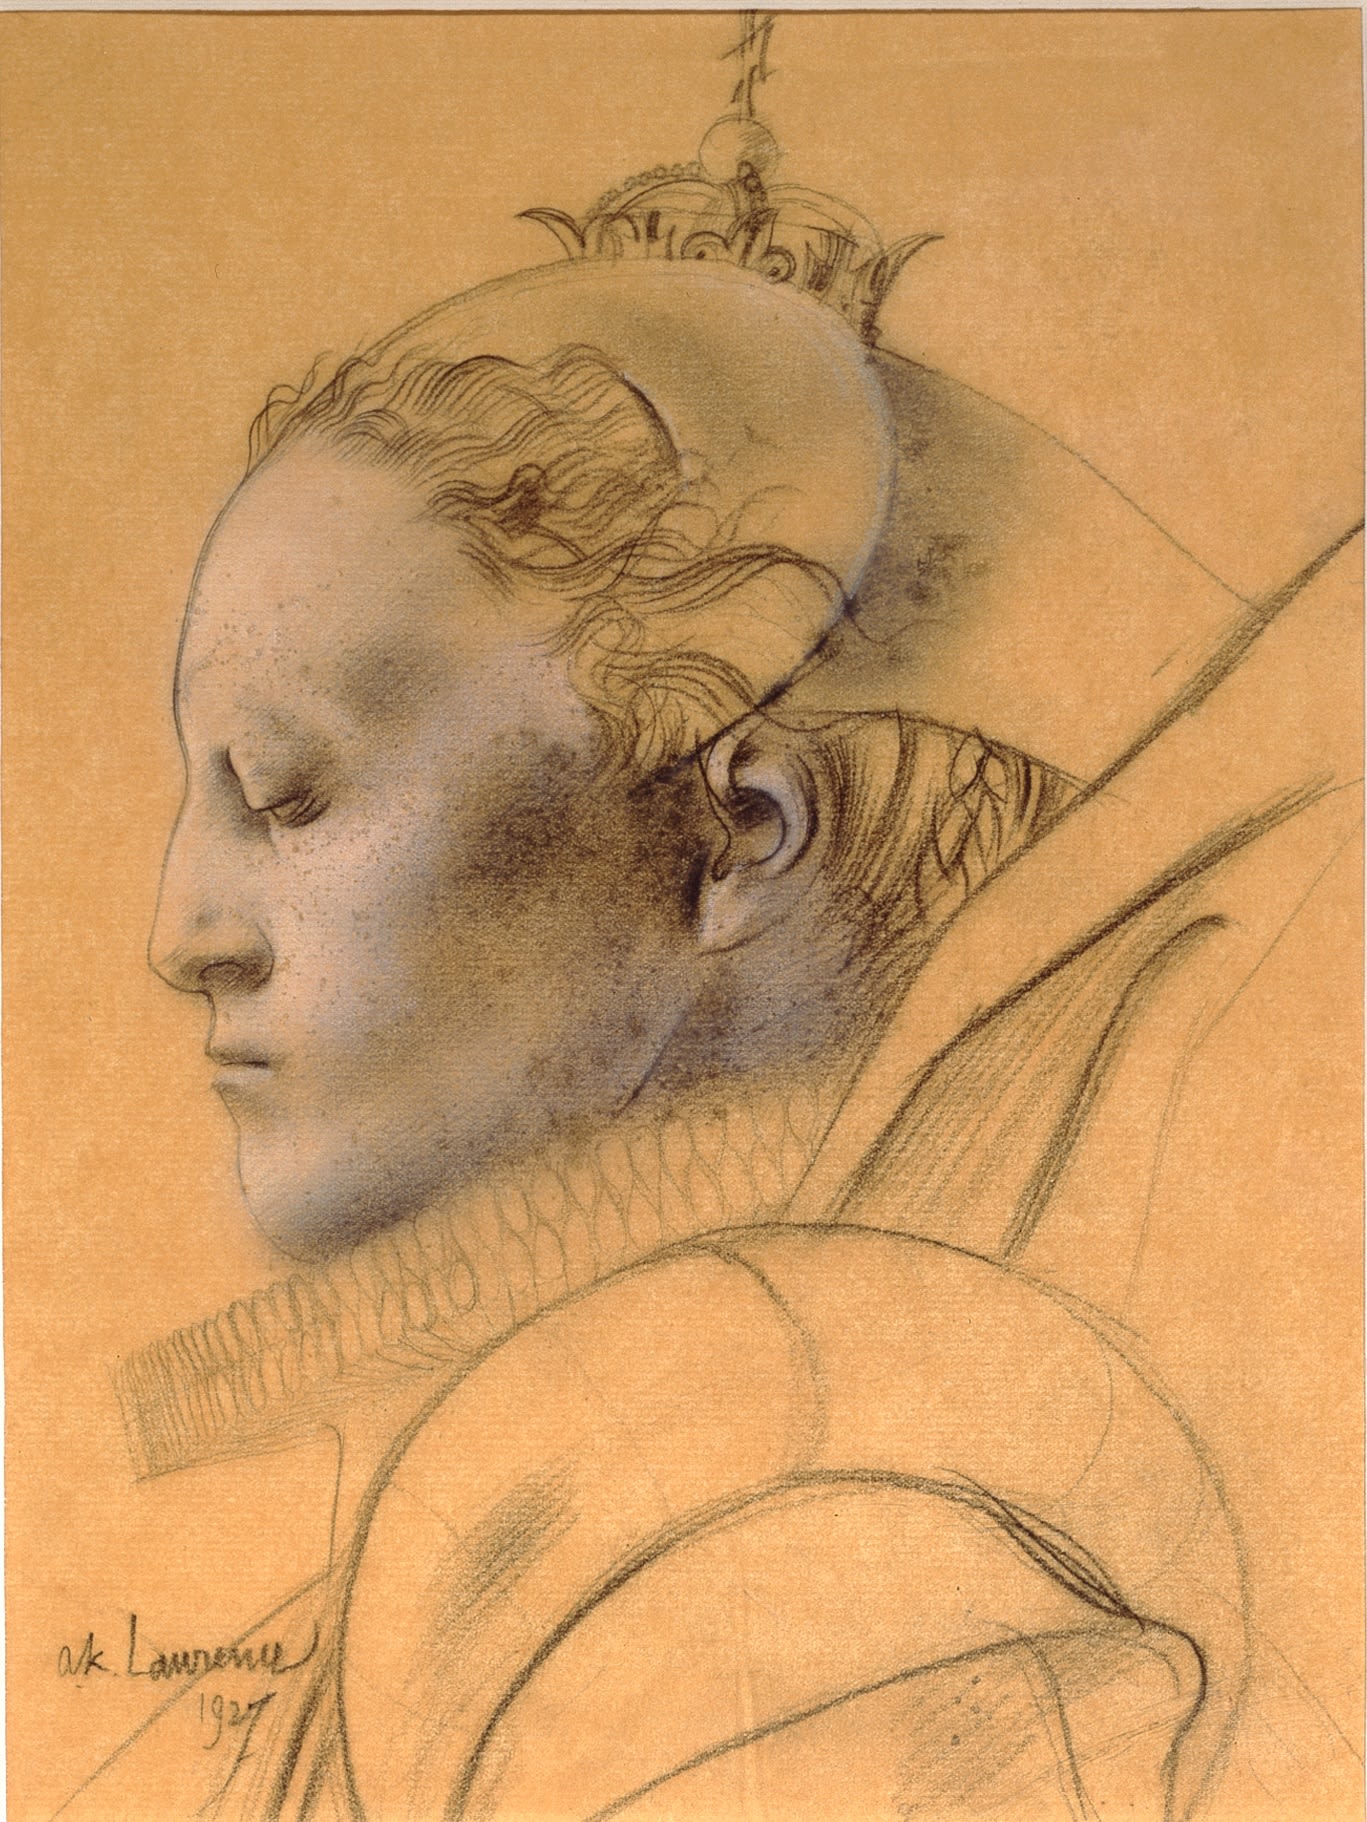 Pencil drawing of Queen Elizabeth I in profile